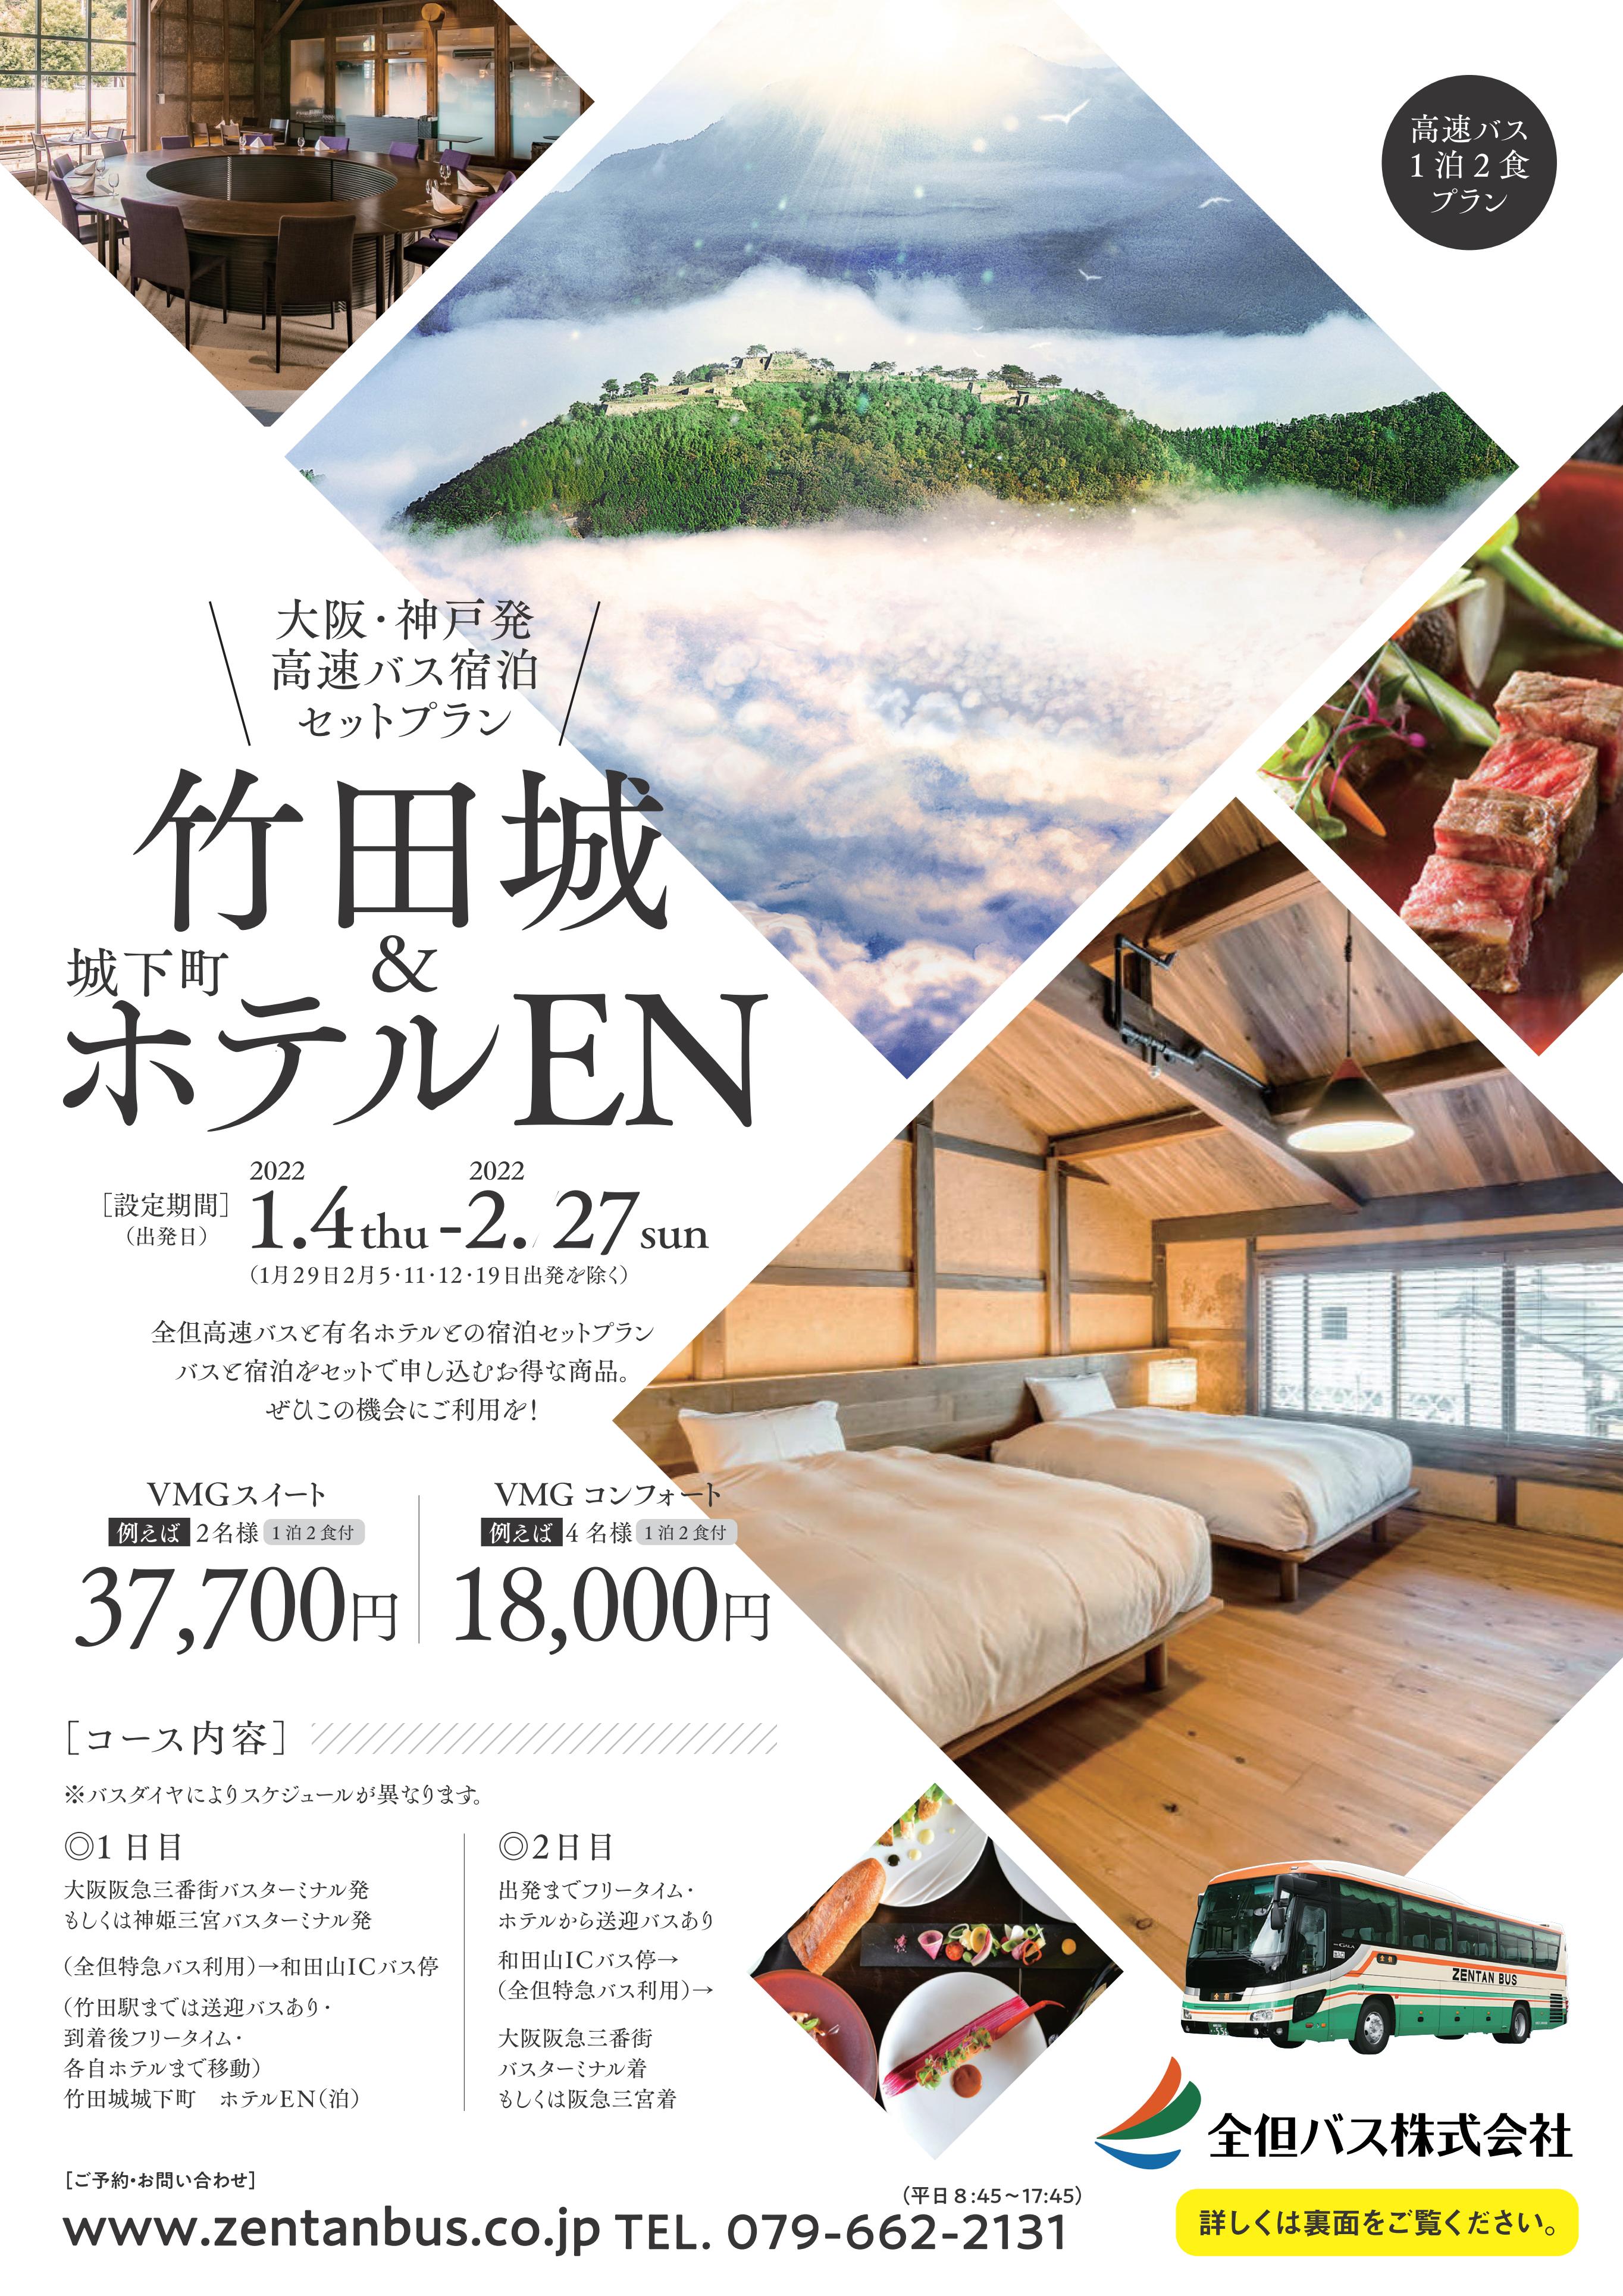 Zentan Bus x EN Takeda Castle Town Hotel